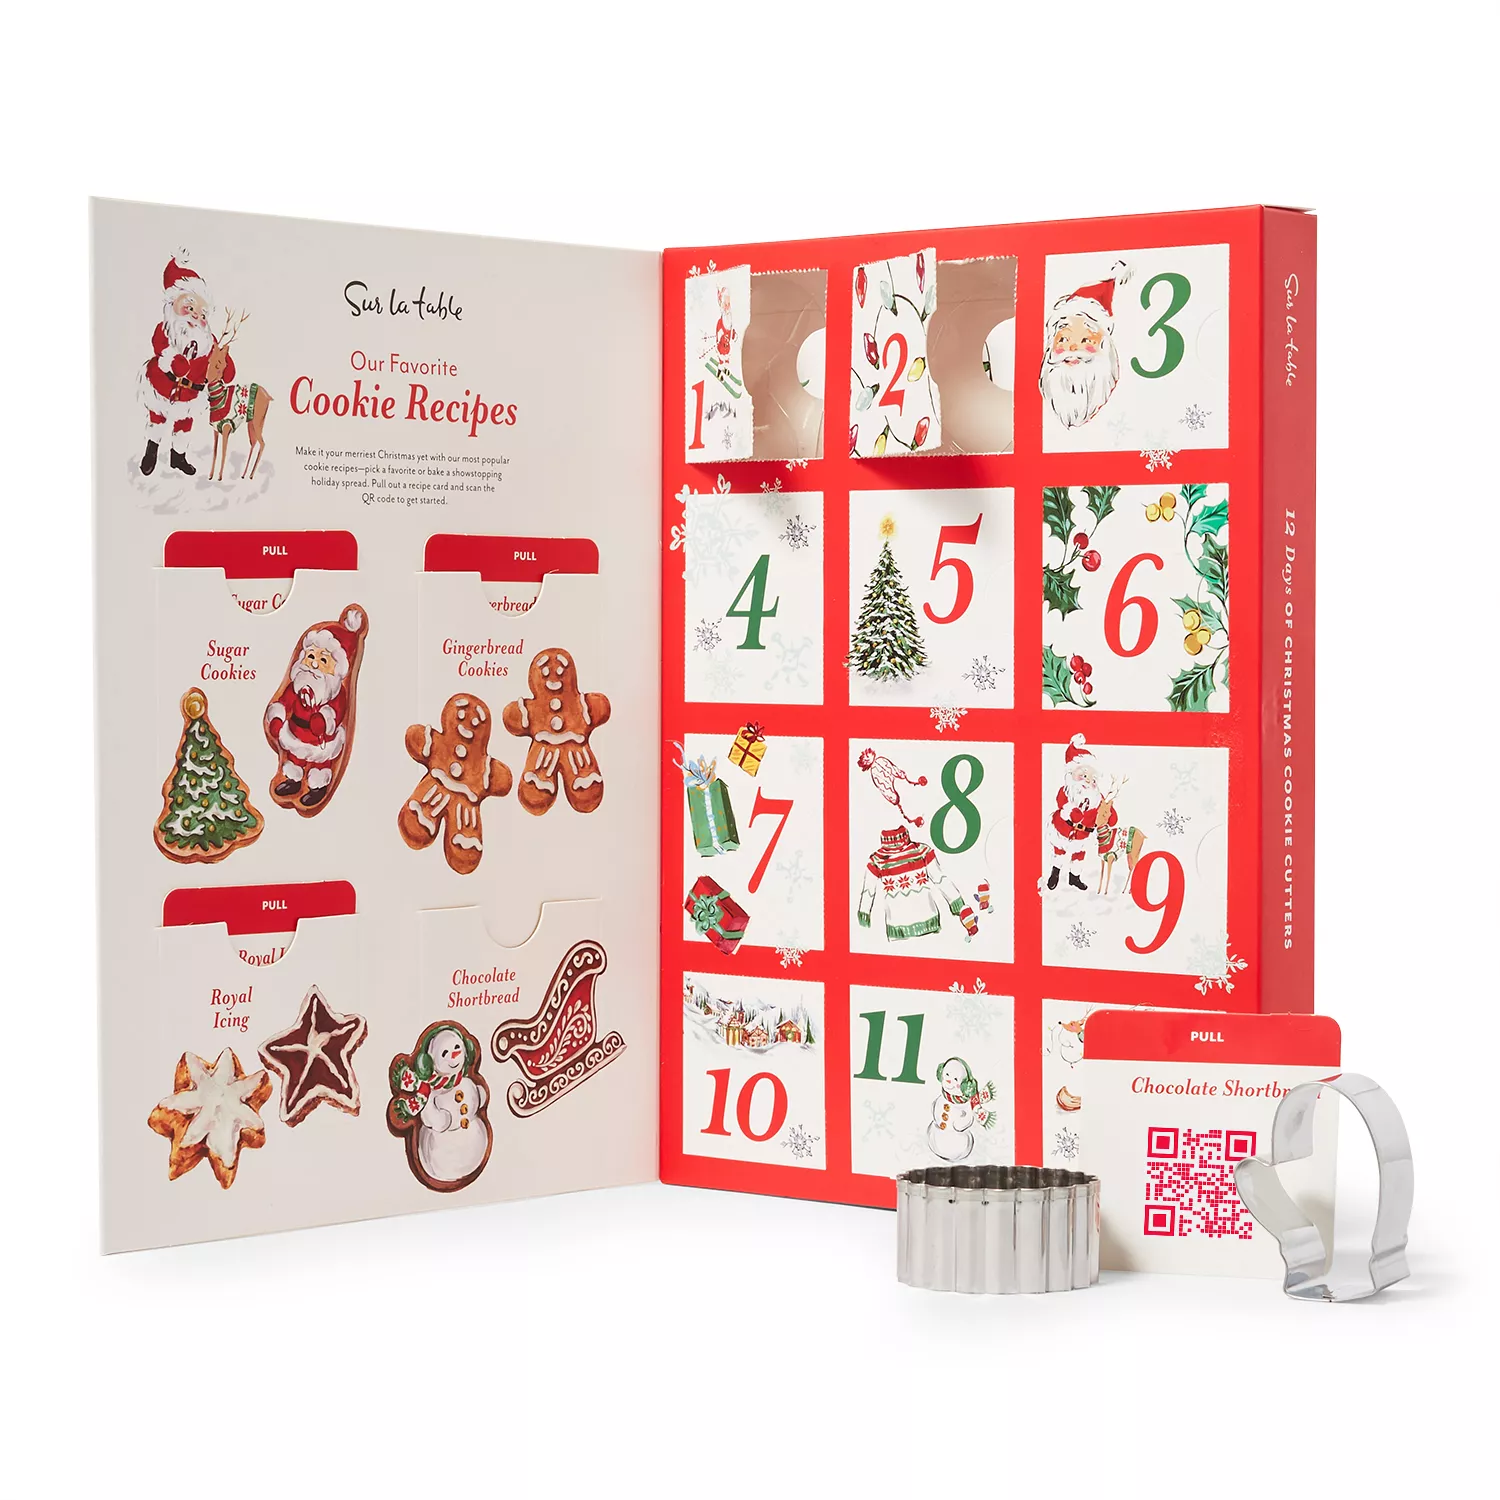 Sur La Table Mini Cookie Cutter Calendar, Set of 12